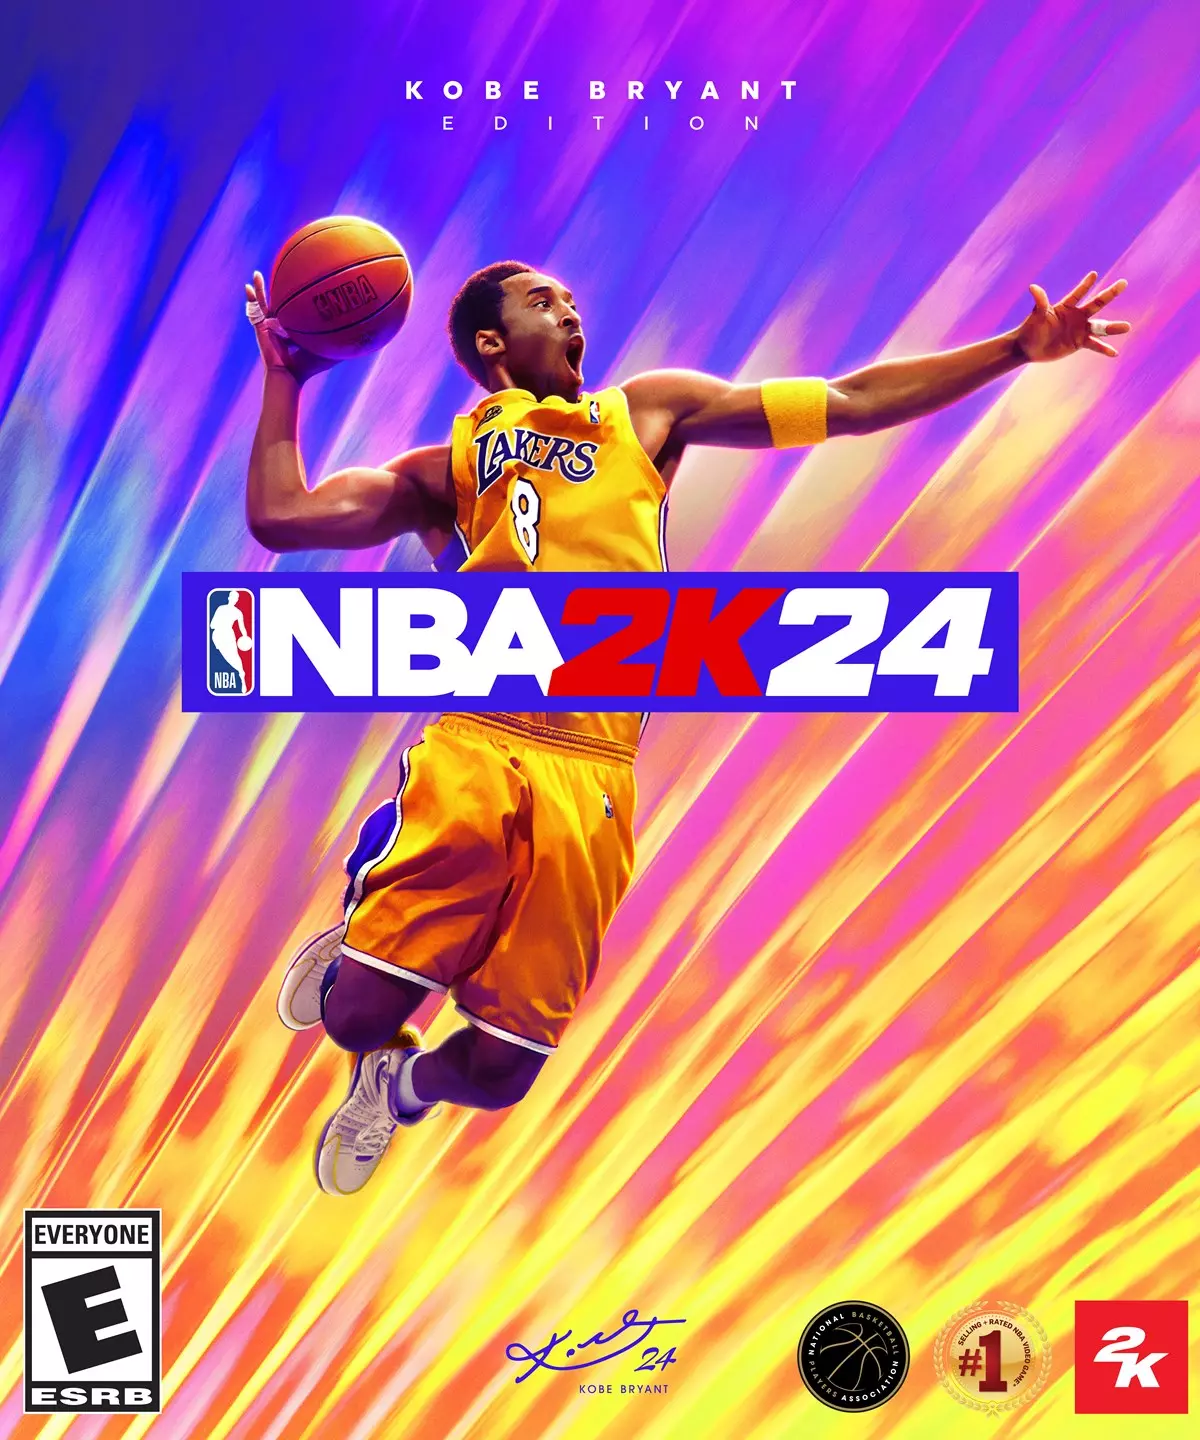 已故 NBA 球星 KOBE BRYANT《NBA2K24》封面正式登場